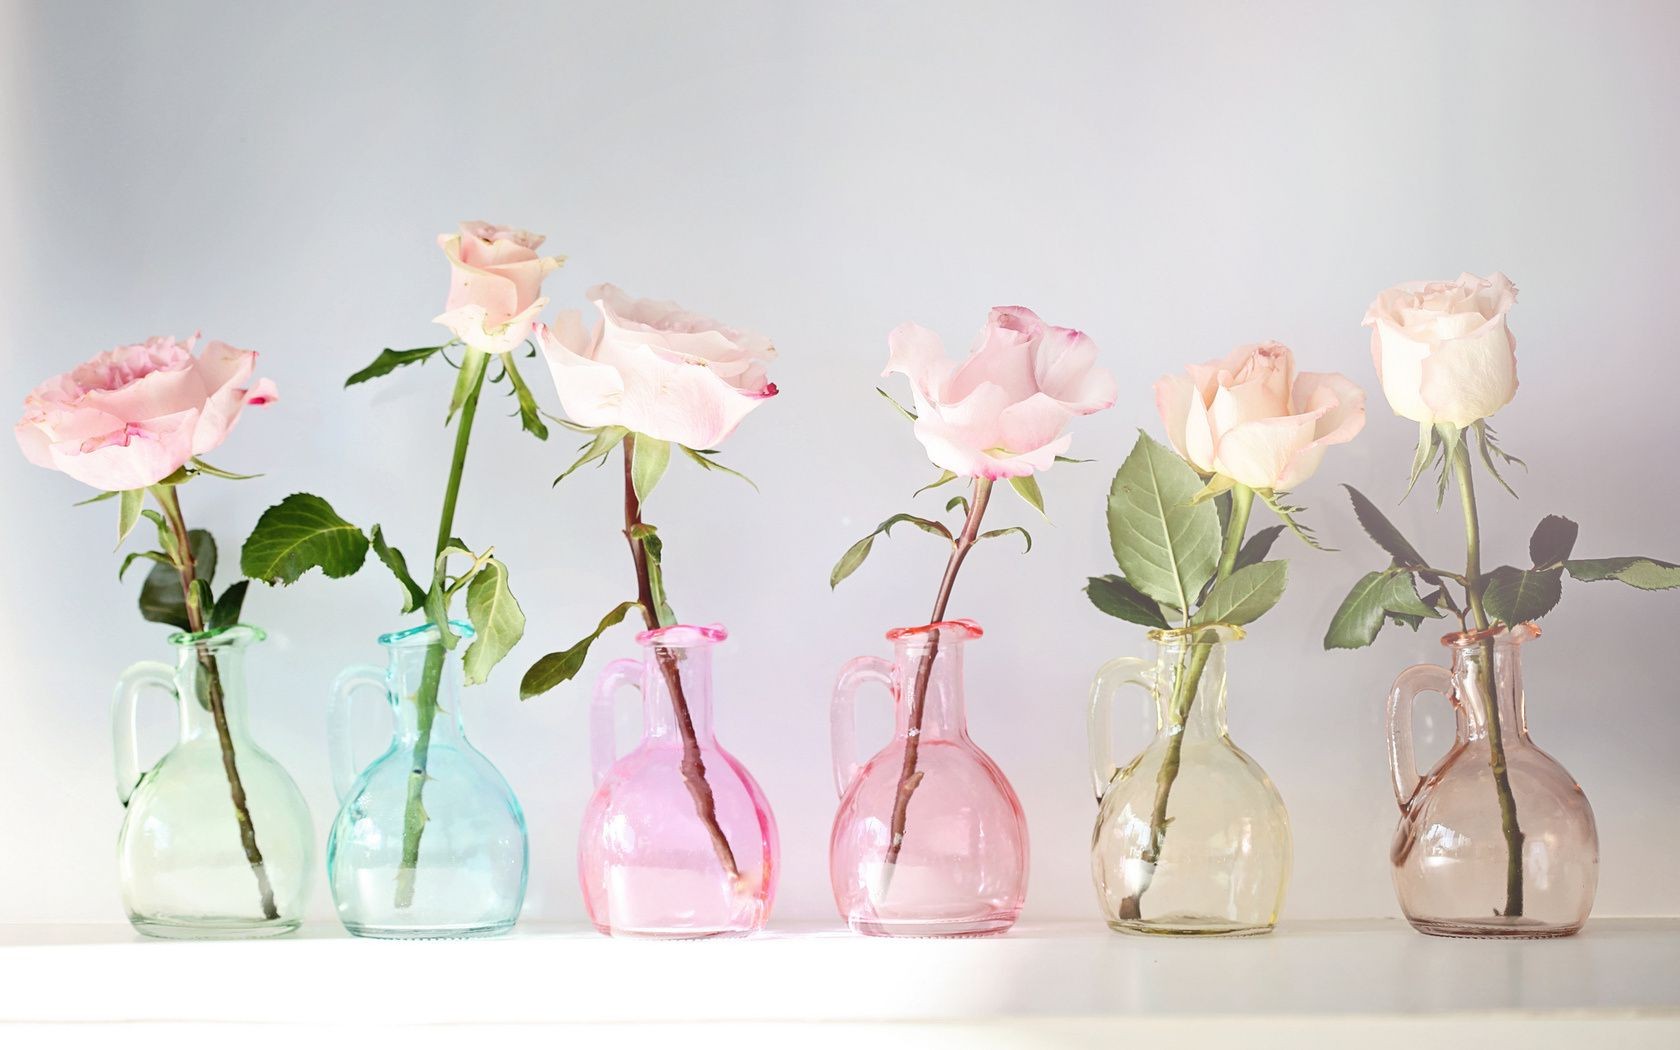 цветы цветок природа ваза флора лист романтика рост роза цветочные любовь изолированные романтический букет рабочего стола